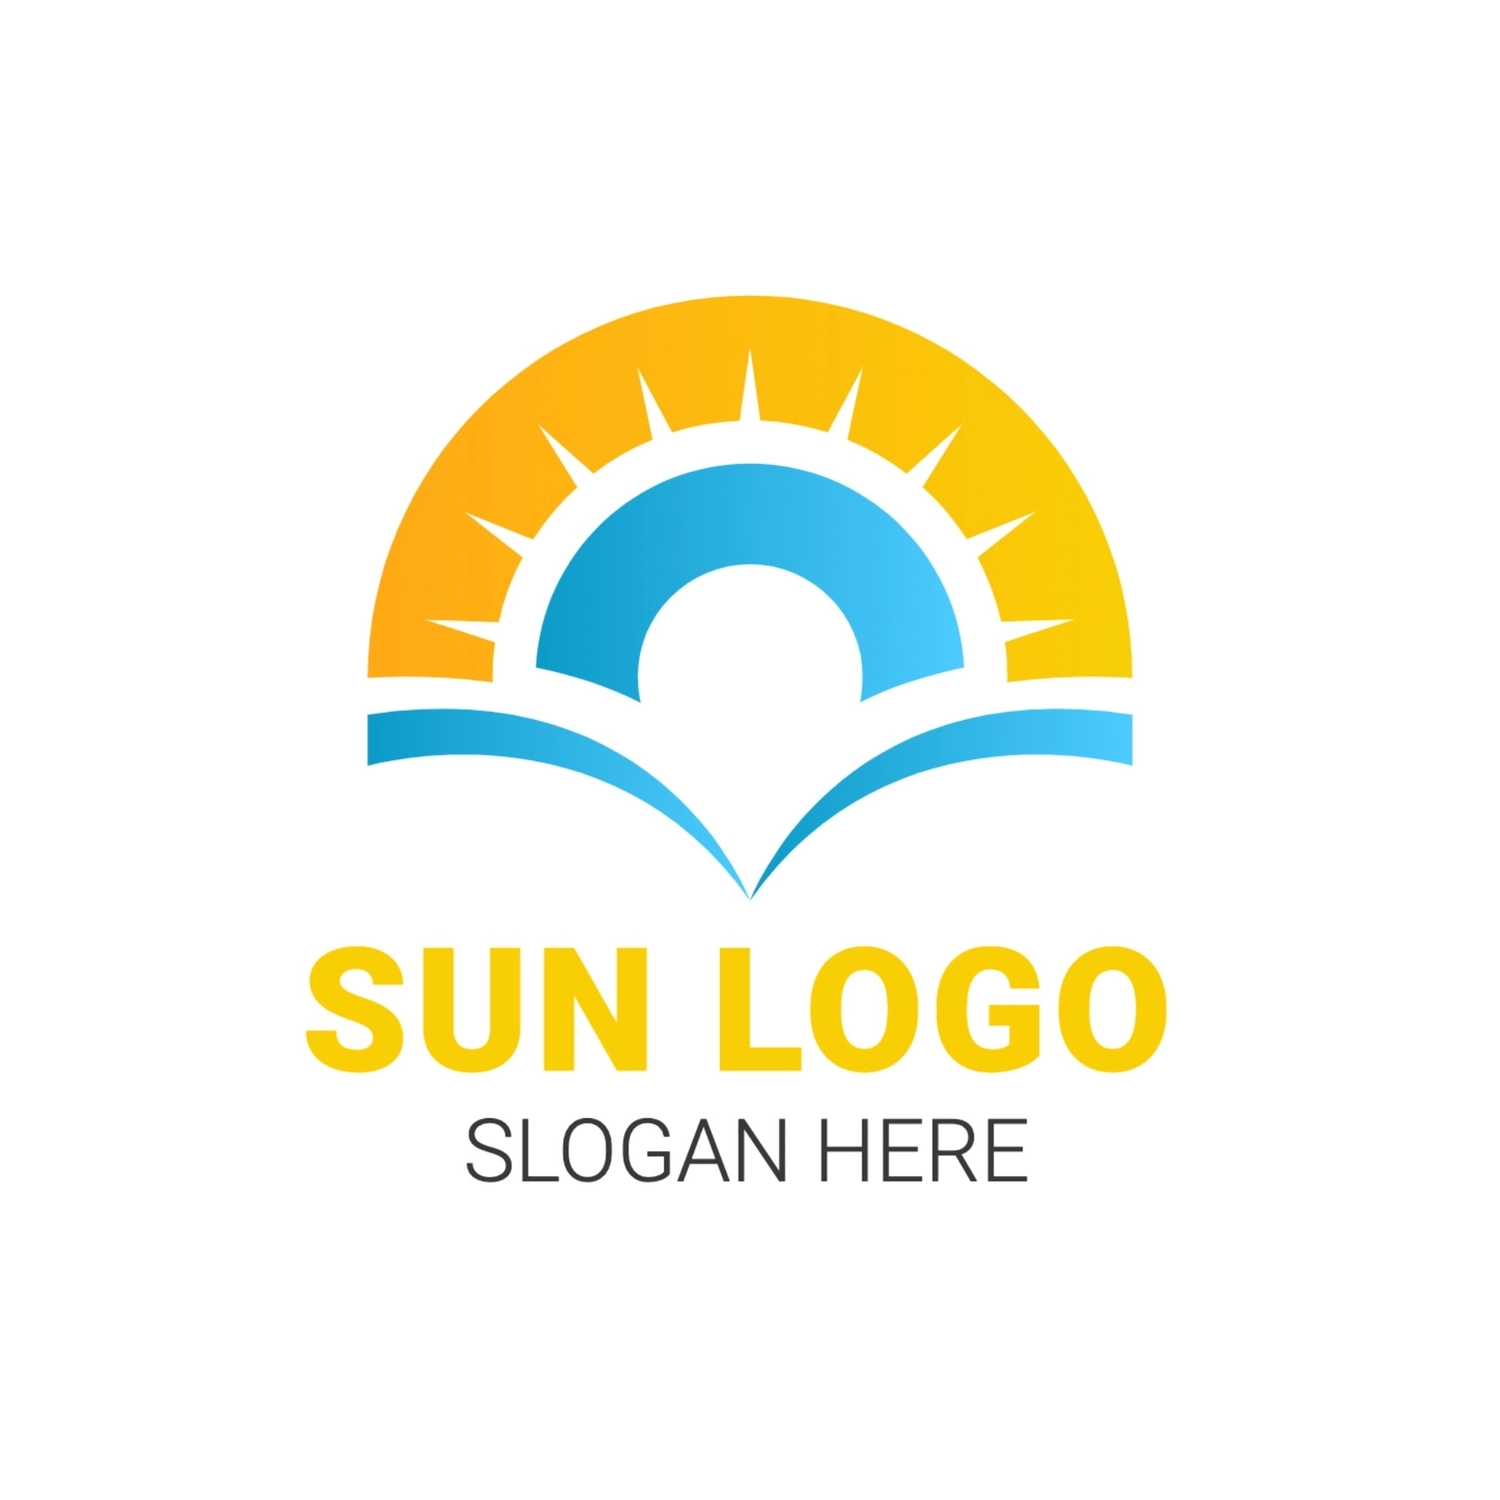 太陽のロゴ, 明るい, 作成, デザイン, ロゴテンプレート